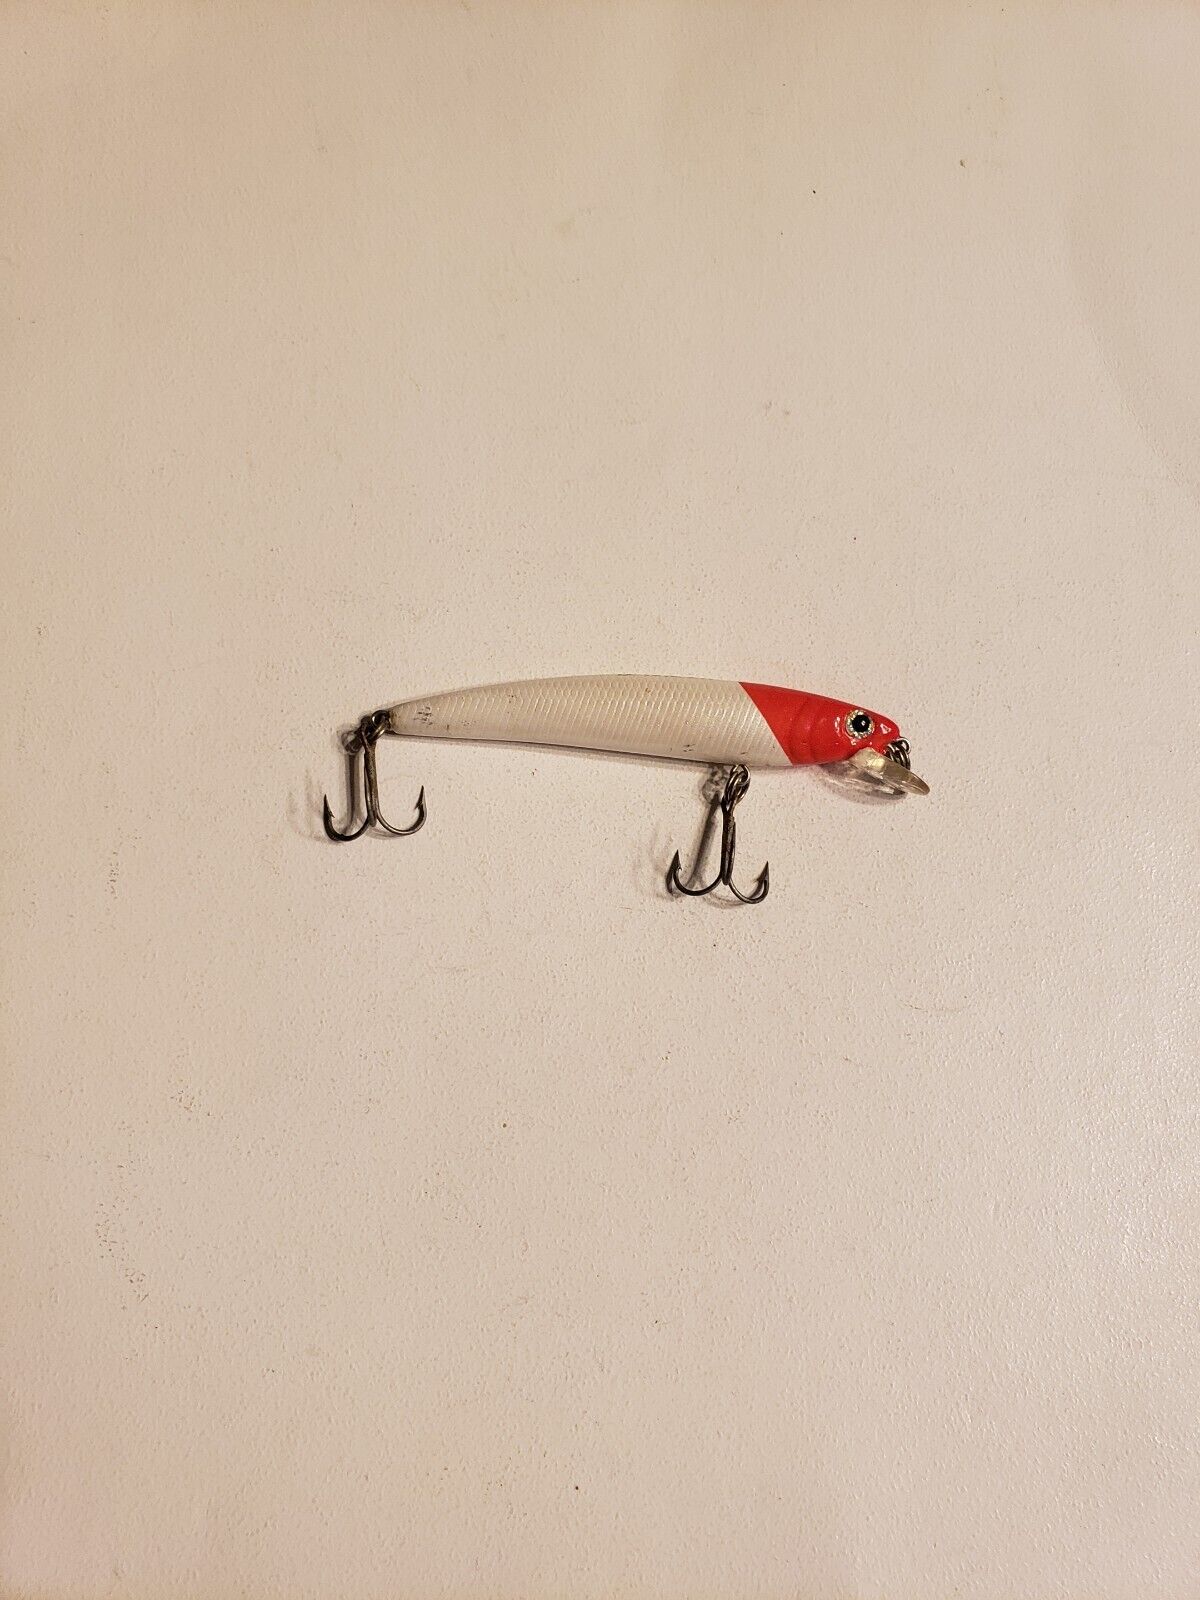 Yo-Zuri S Pin's Minnow, 2-3/4 Red Head Pearl White Floating Lure, Creo  Casa Milano